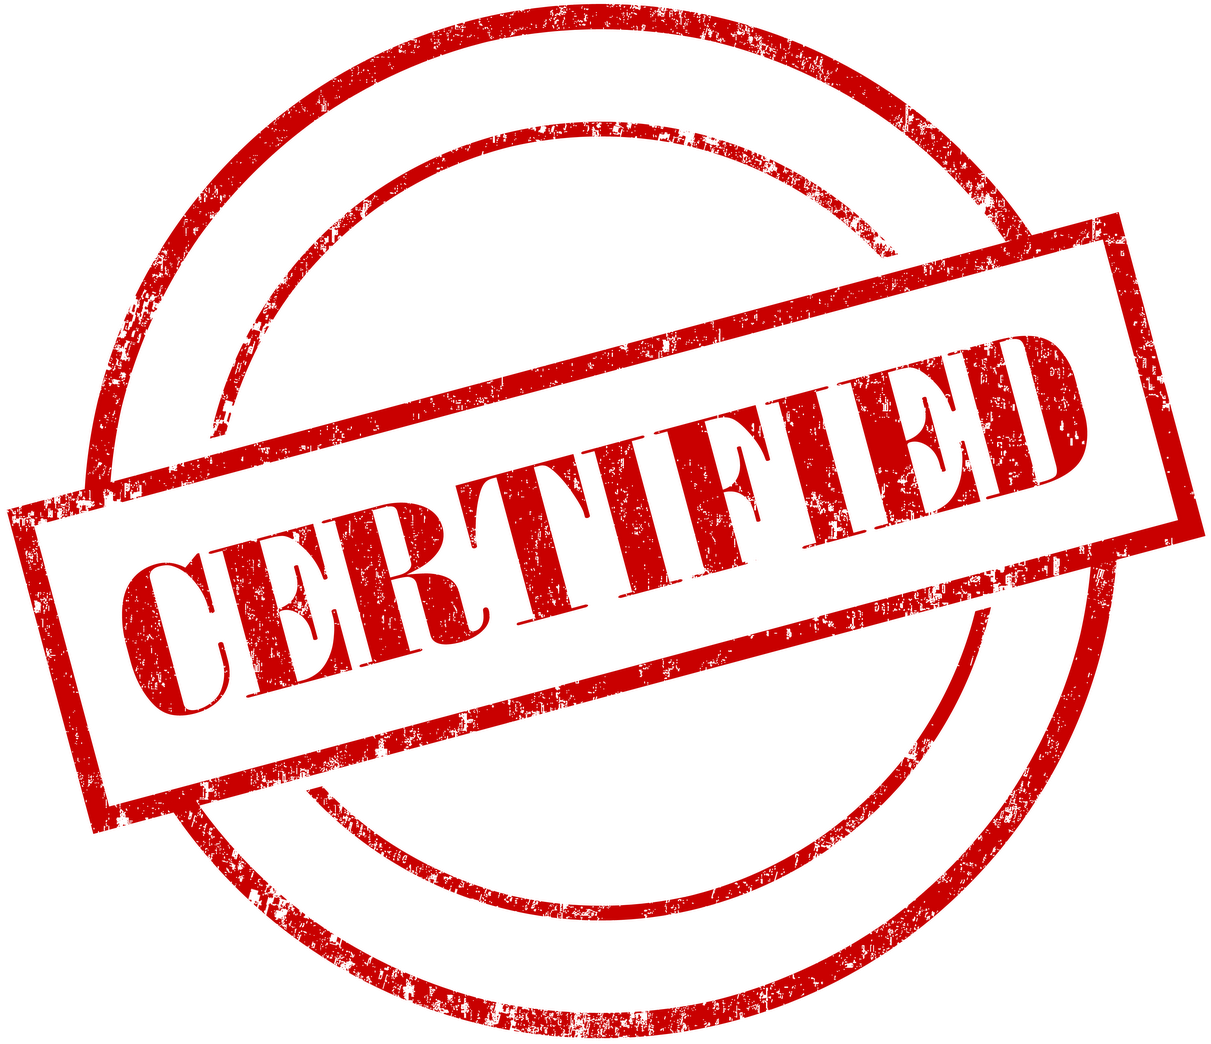 Certified logo